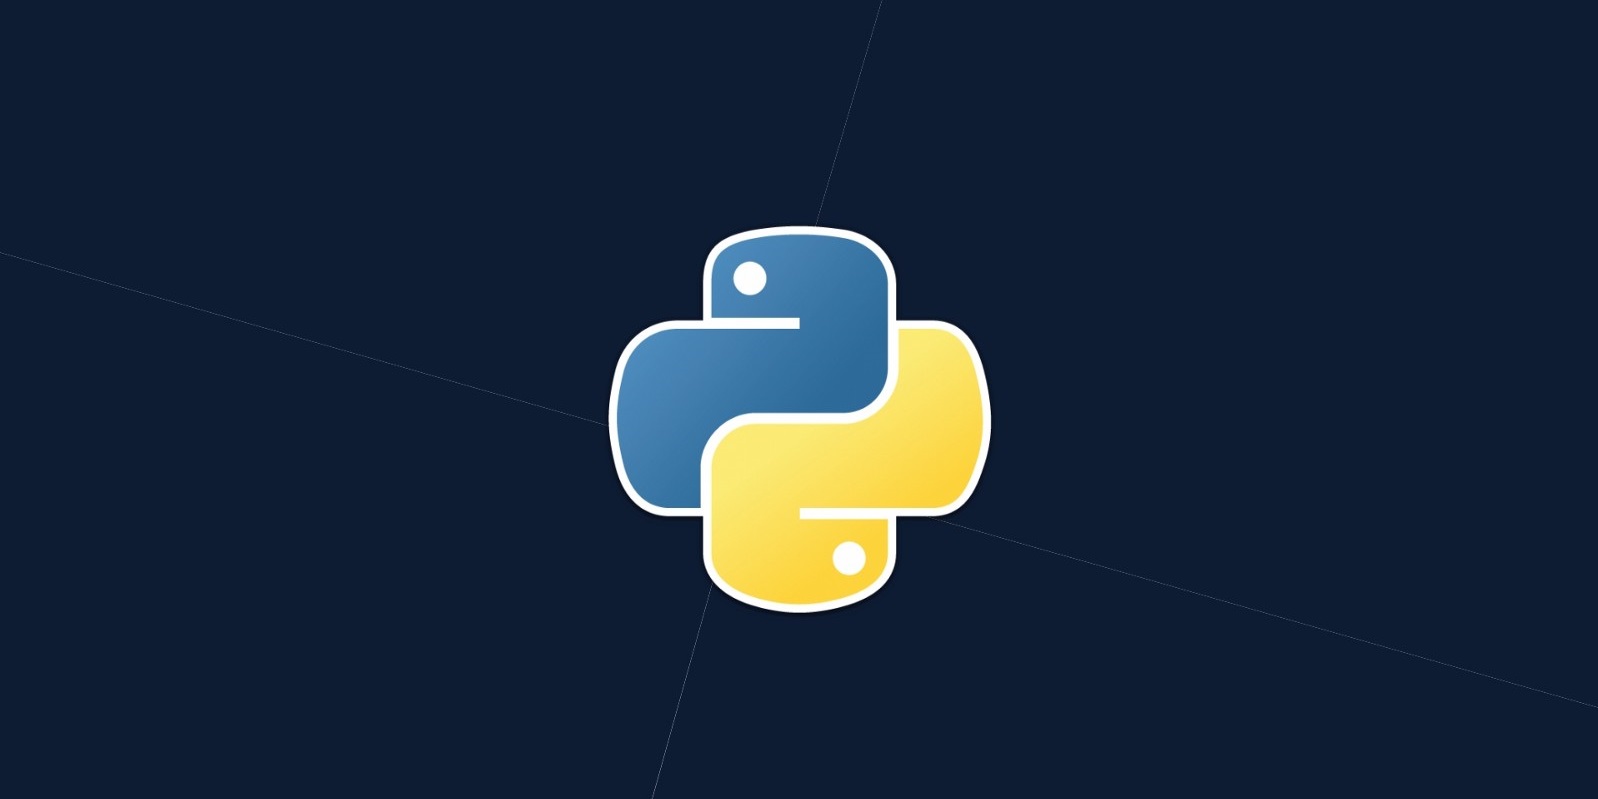   Python-    2019 